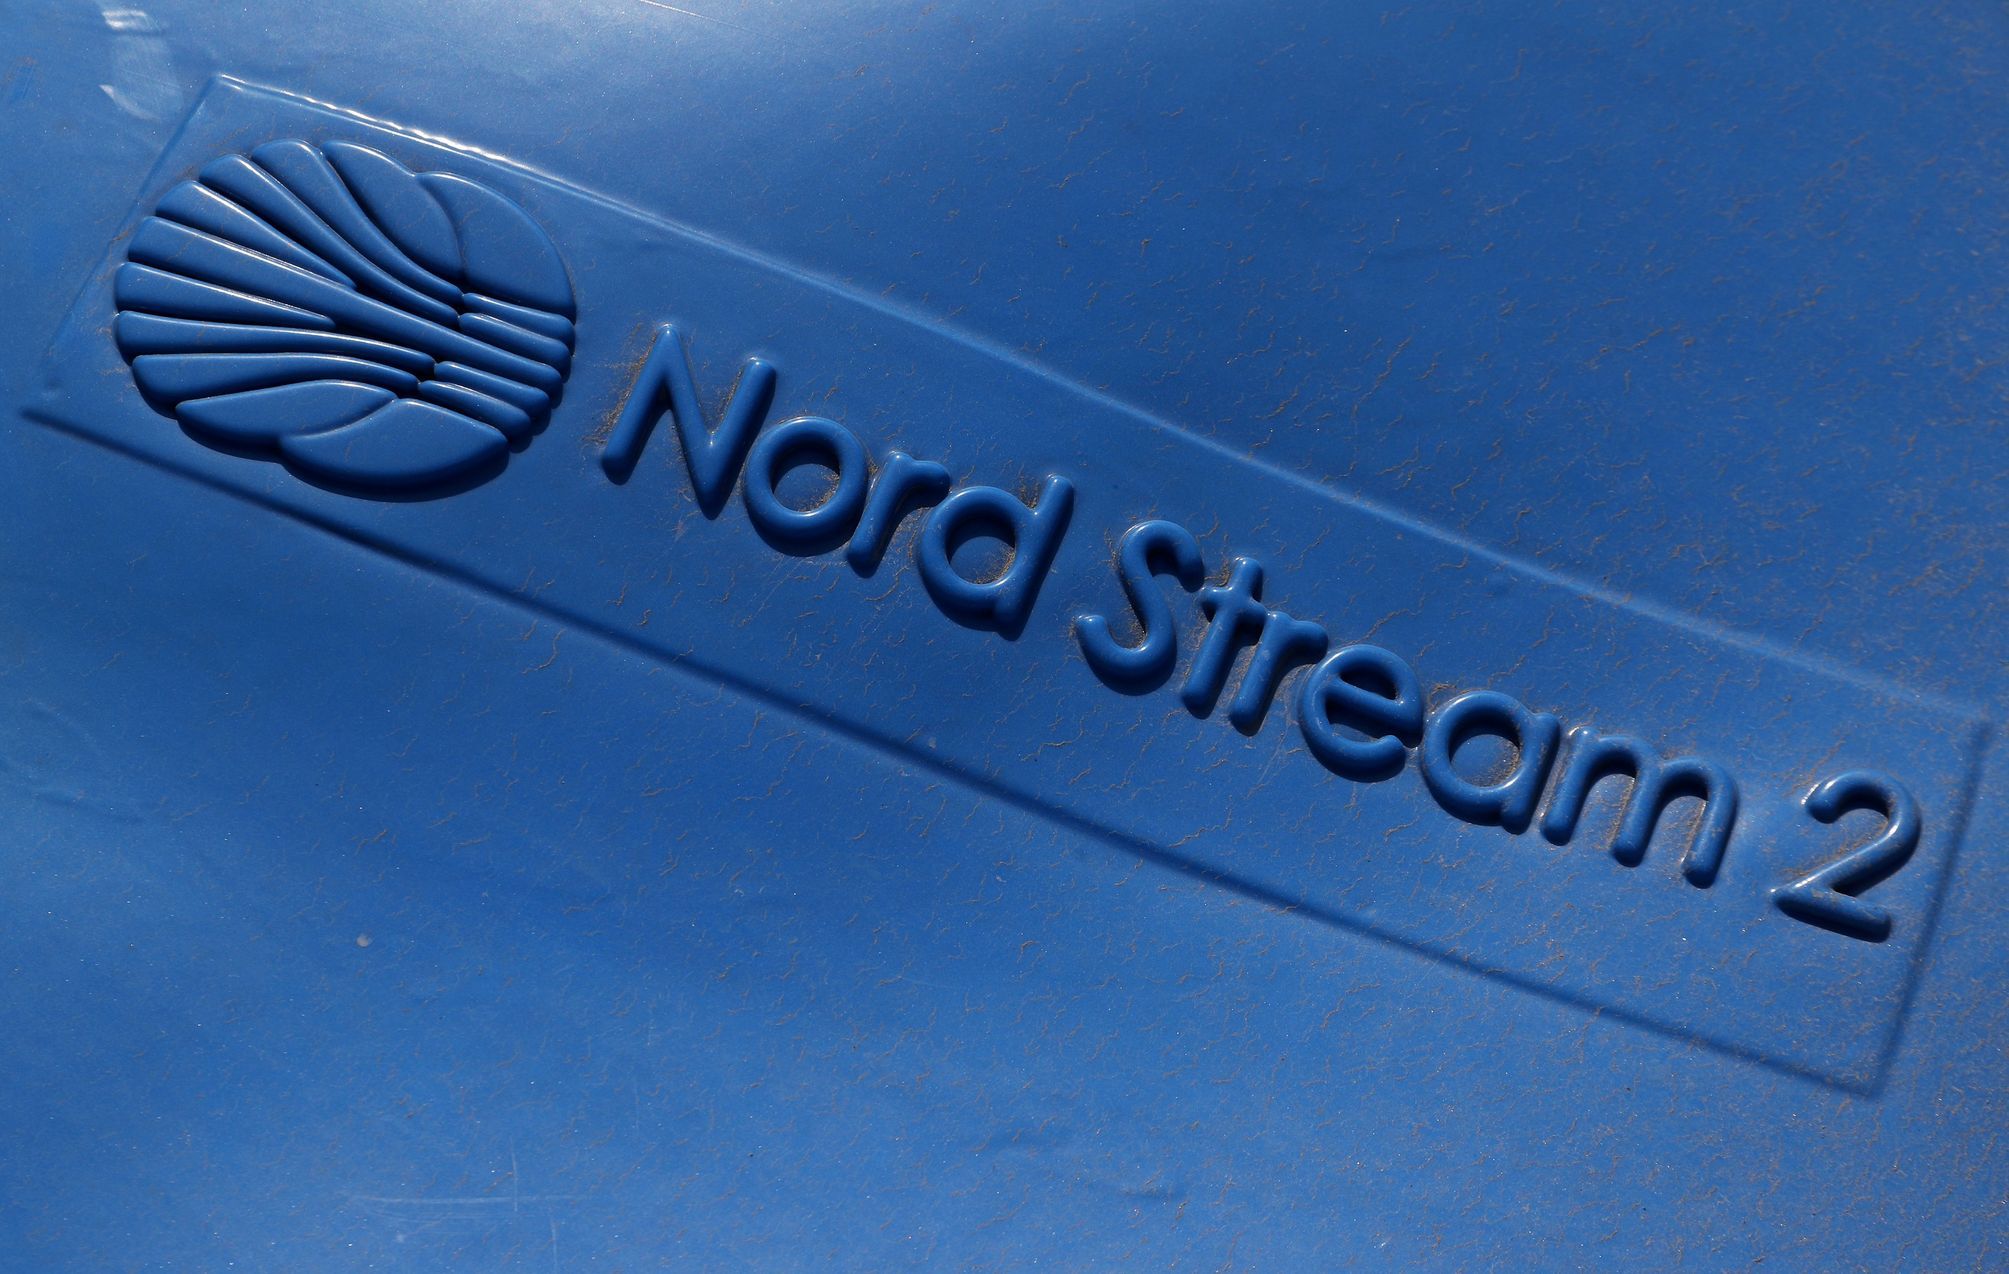 Russland wird Gas aus Nord Stream 2 verkaufen. Nur die Zustimmung der deutschen Regulierungsbehörde fehlt